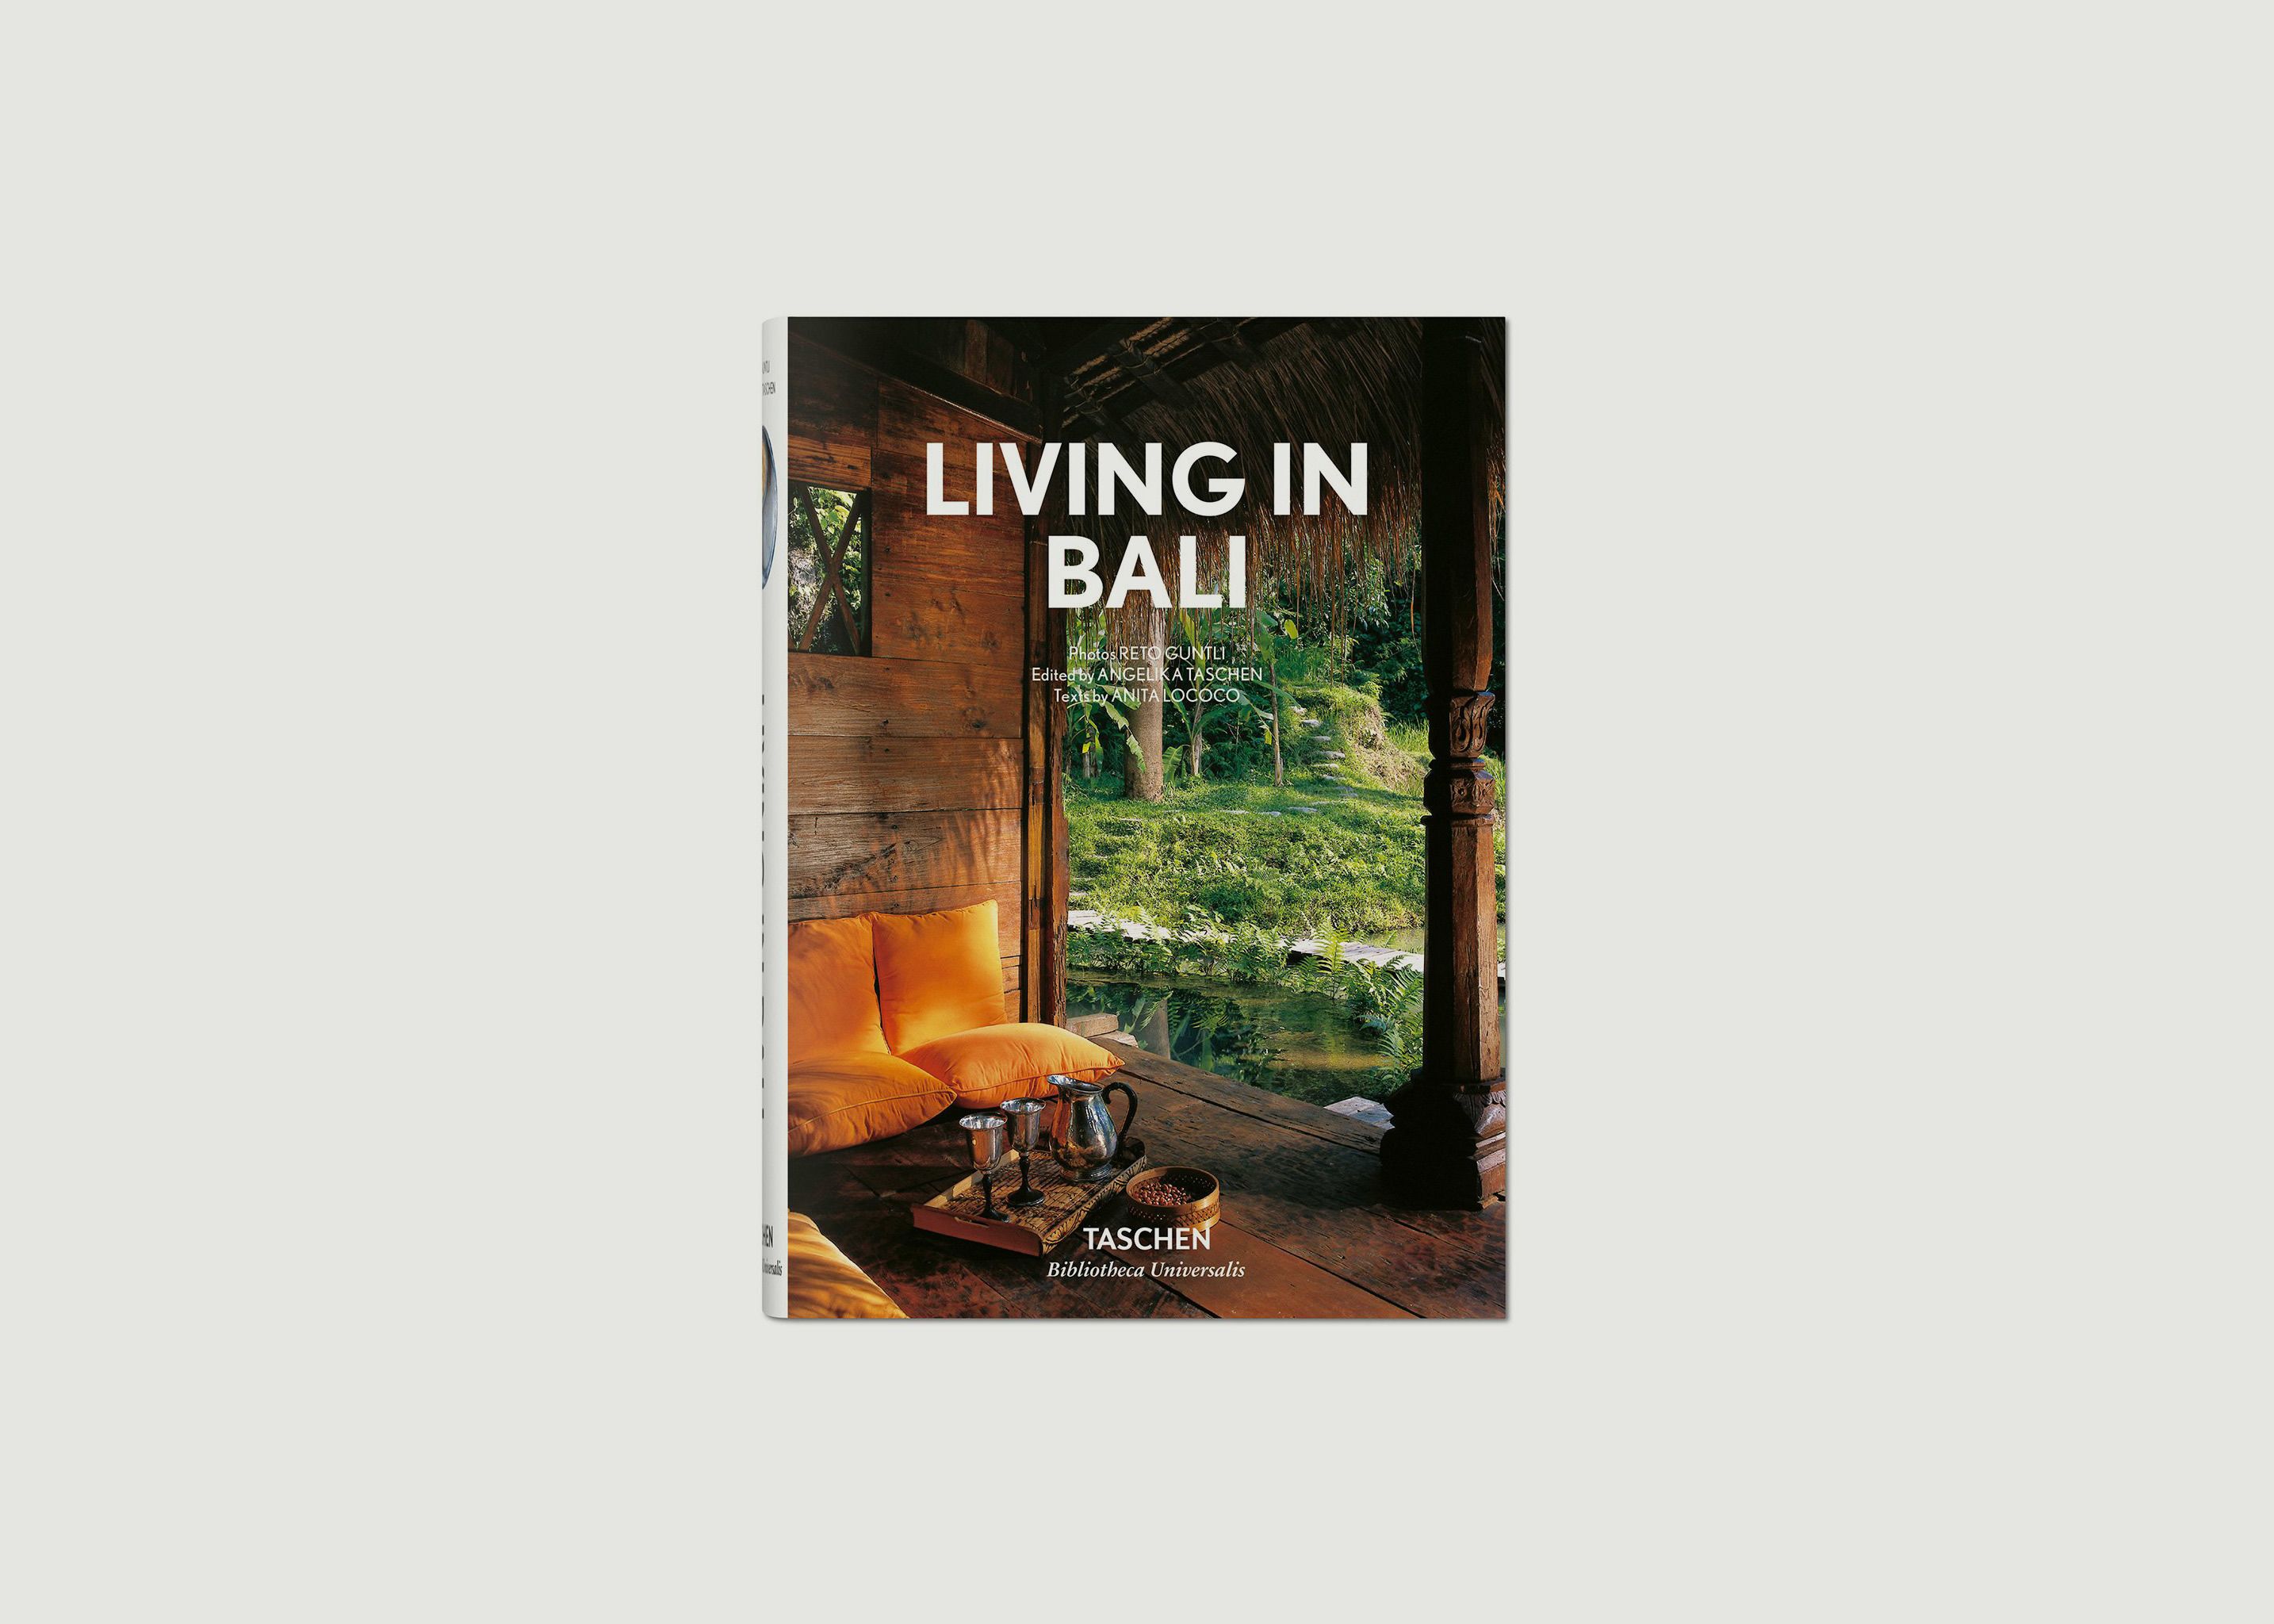 Livre Living in Bali - Taschen